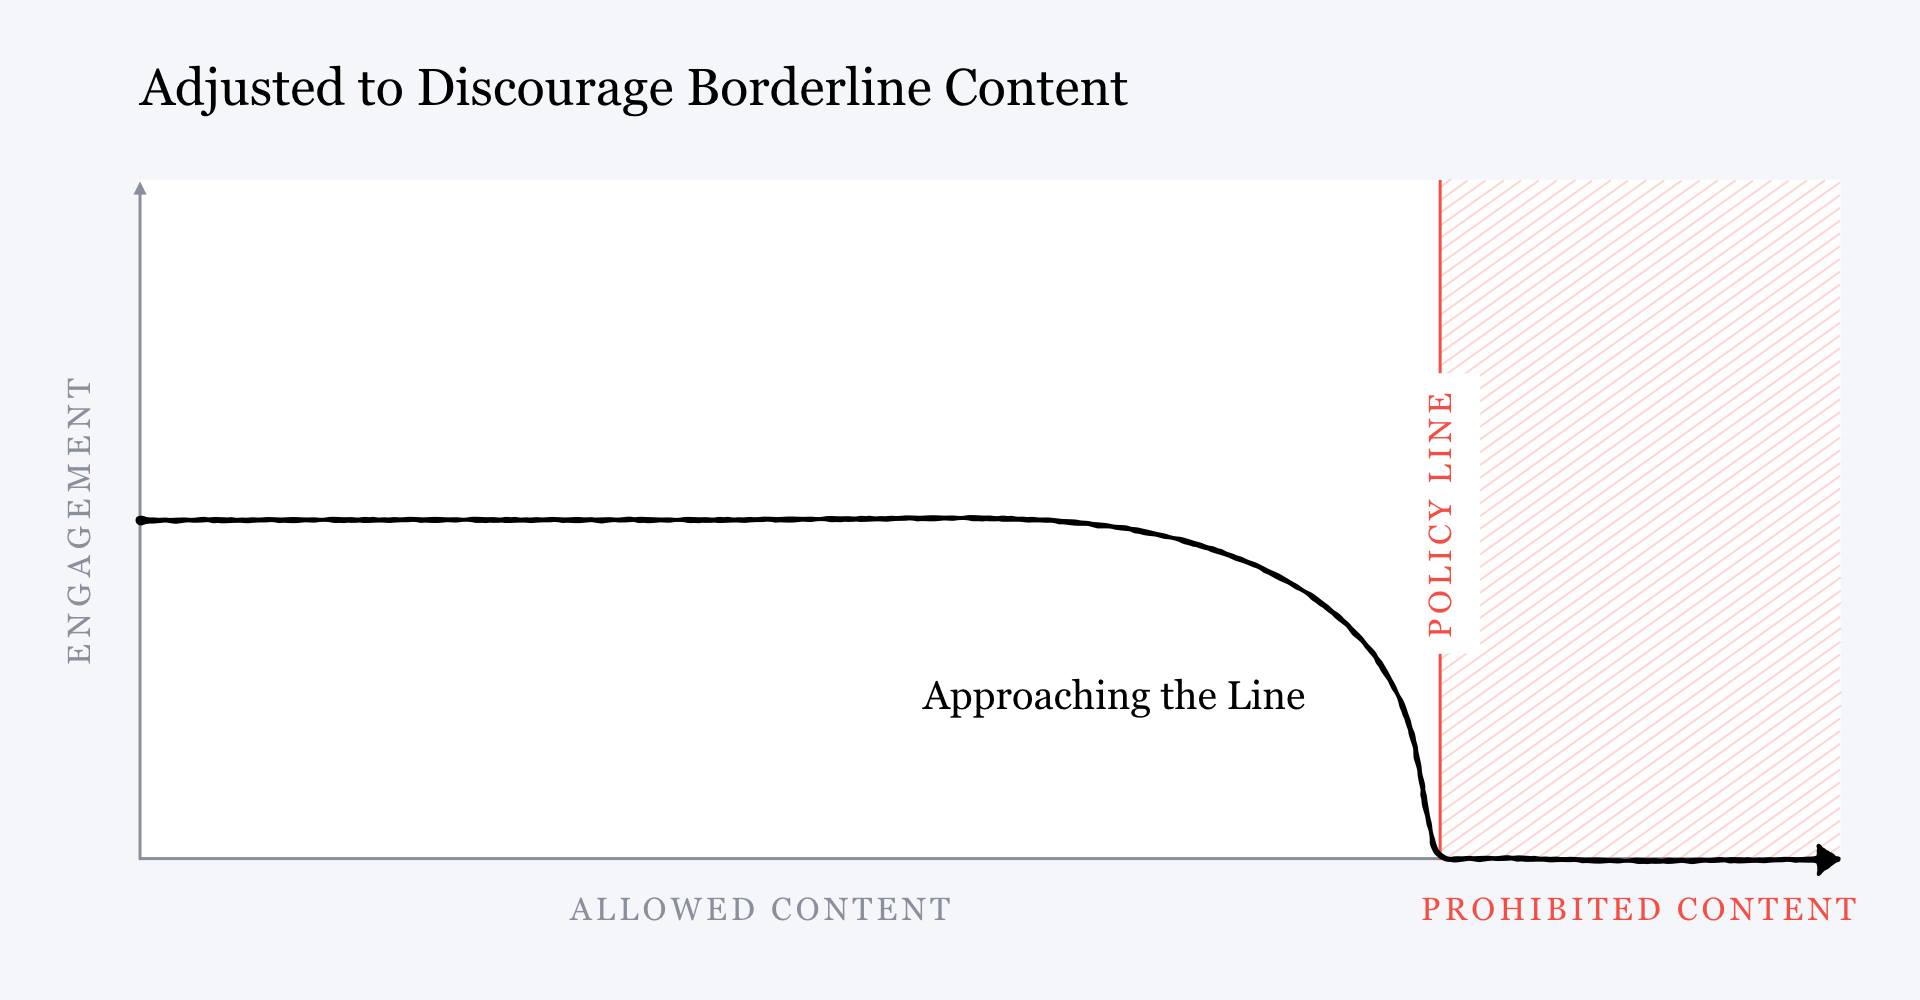 Un gráfico titulado "ajustado para desalentar el contenido límite" que muestra el mismo gráfico pero la curva invertida para no alcanzar ningún compromiso cuando alcanza la línea de política.